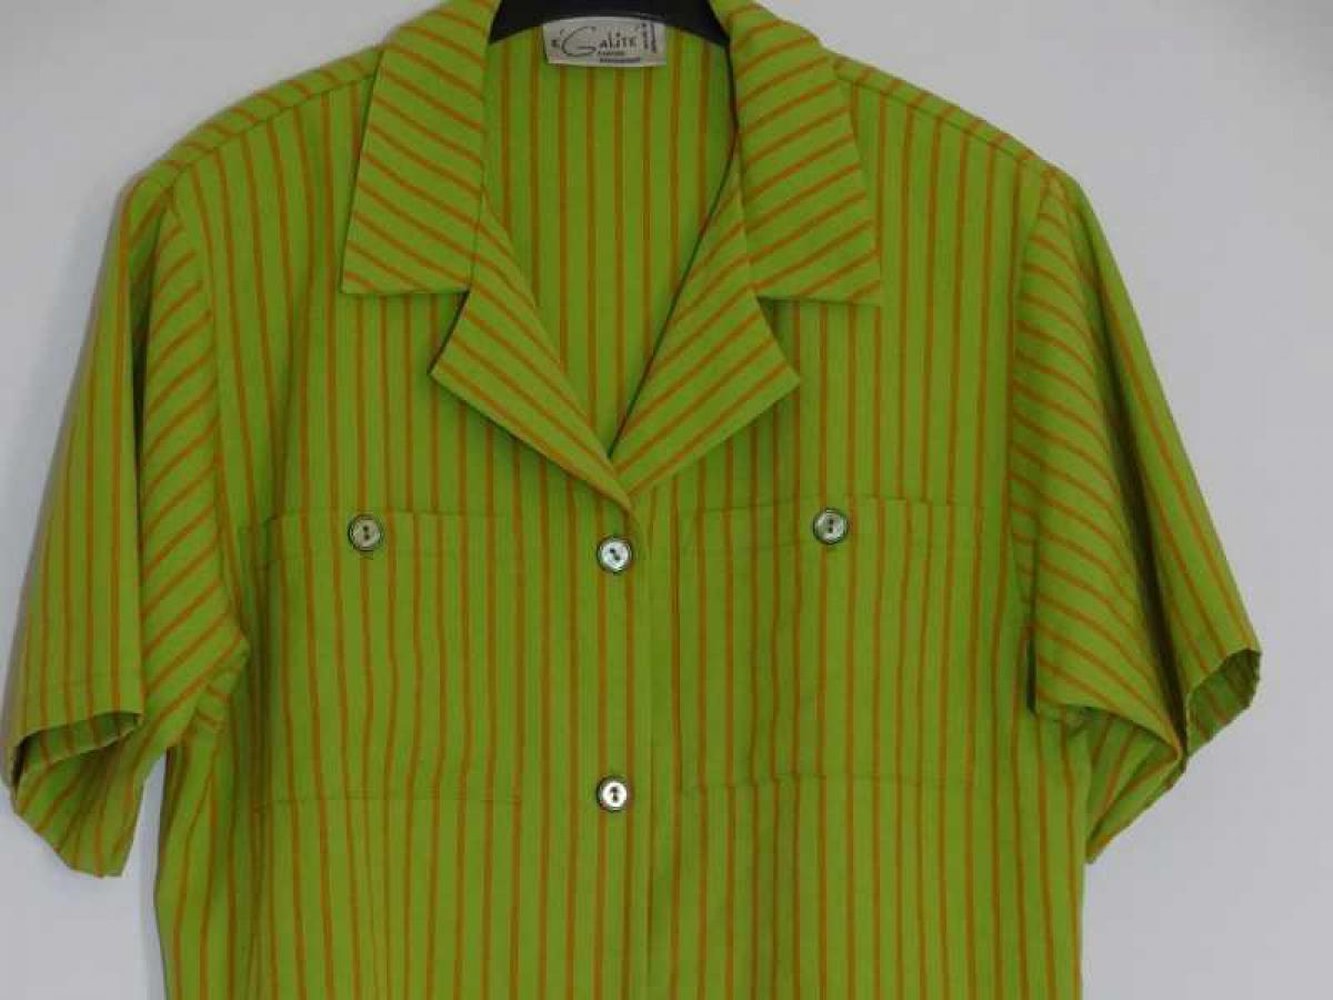 Grüner Hemdblazer mit orangen Streifen Vintage 80er Schulterpolster Gr. L